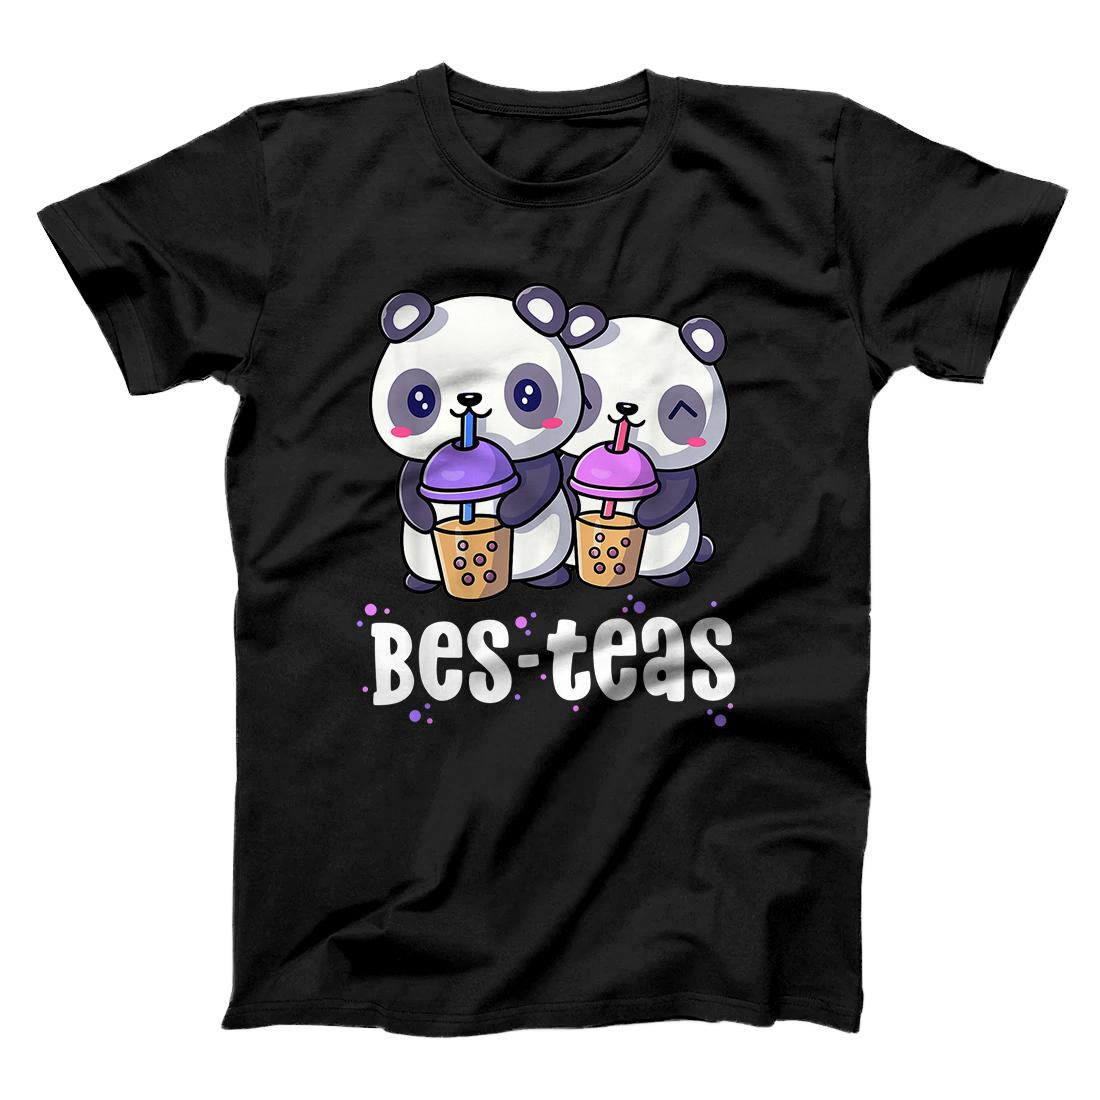 Personalized Boba Shirt Women Girls Bes Teas Kawaii Panda Bubble Tea T-Shirt